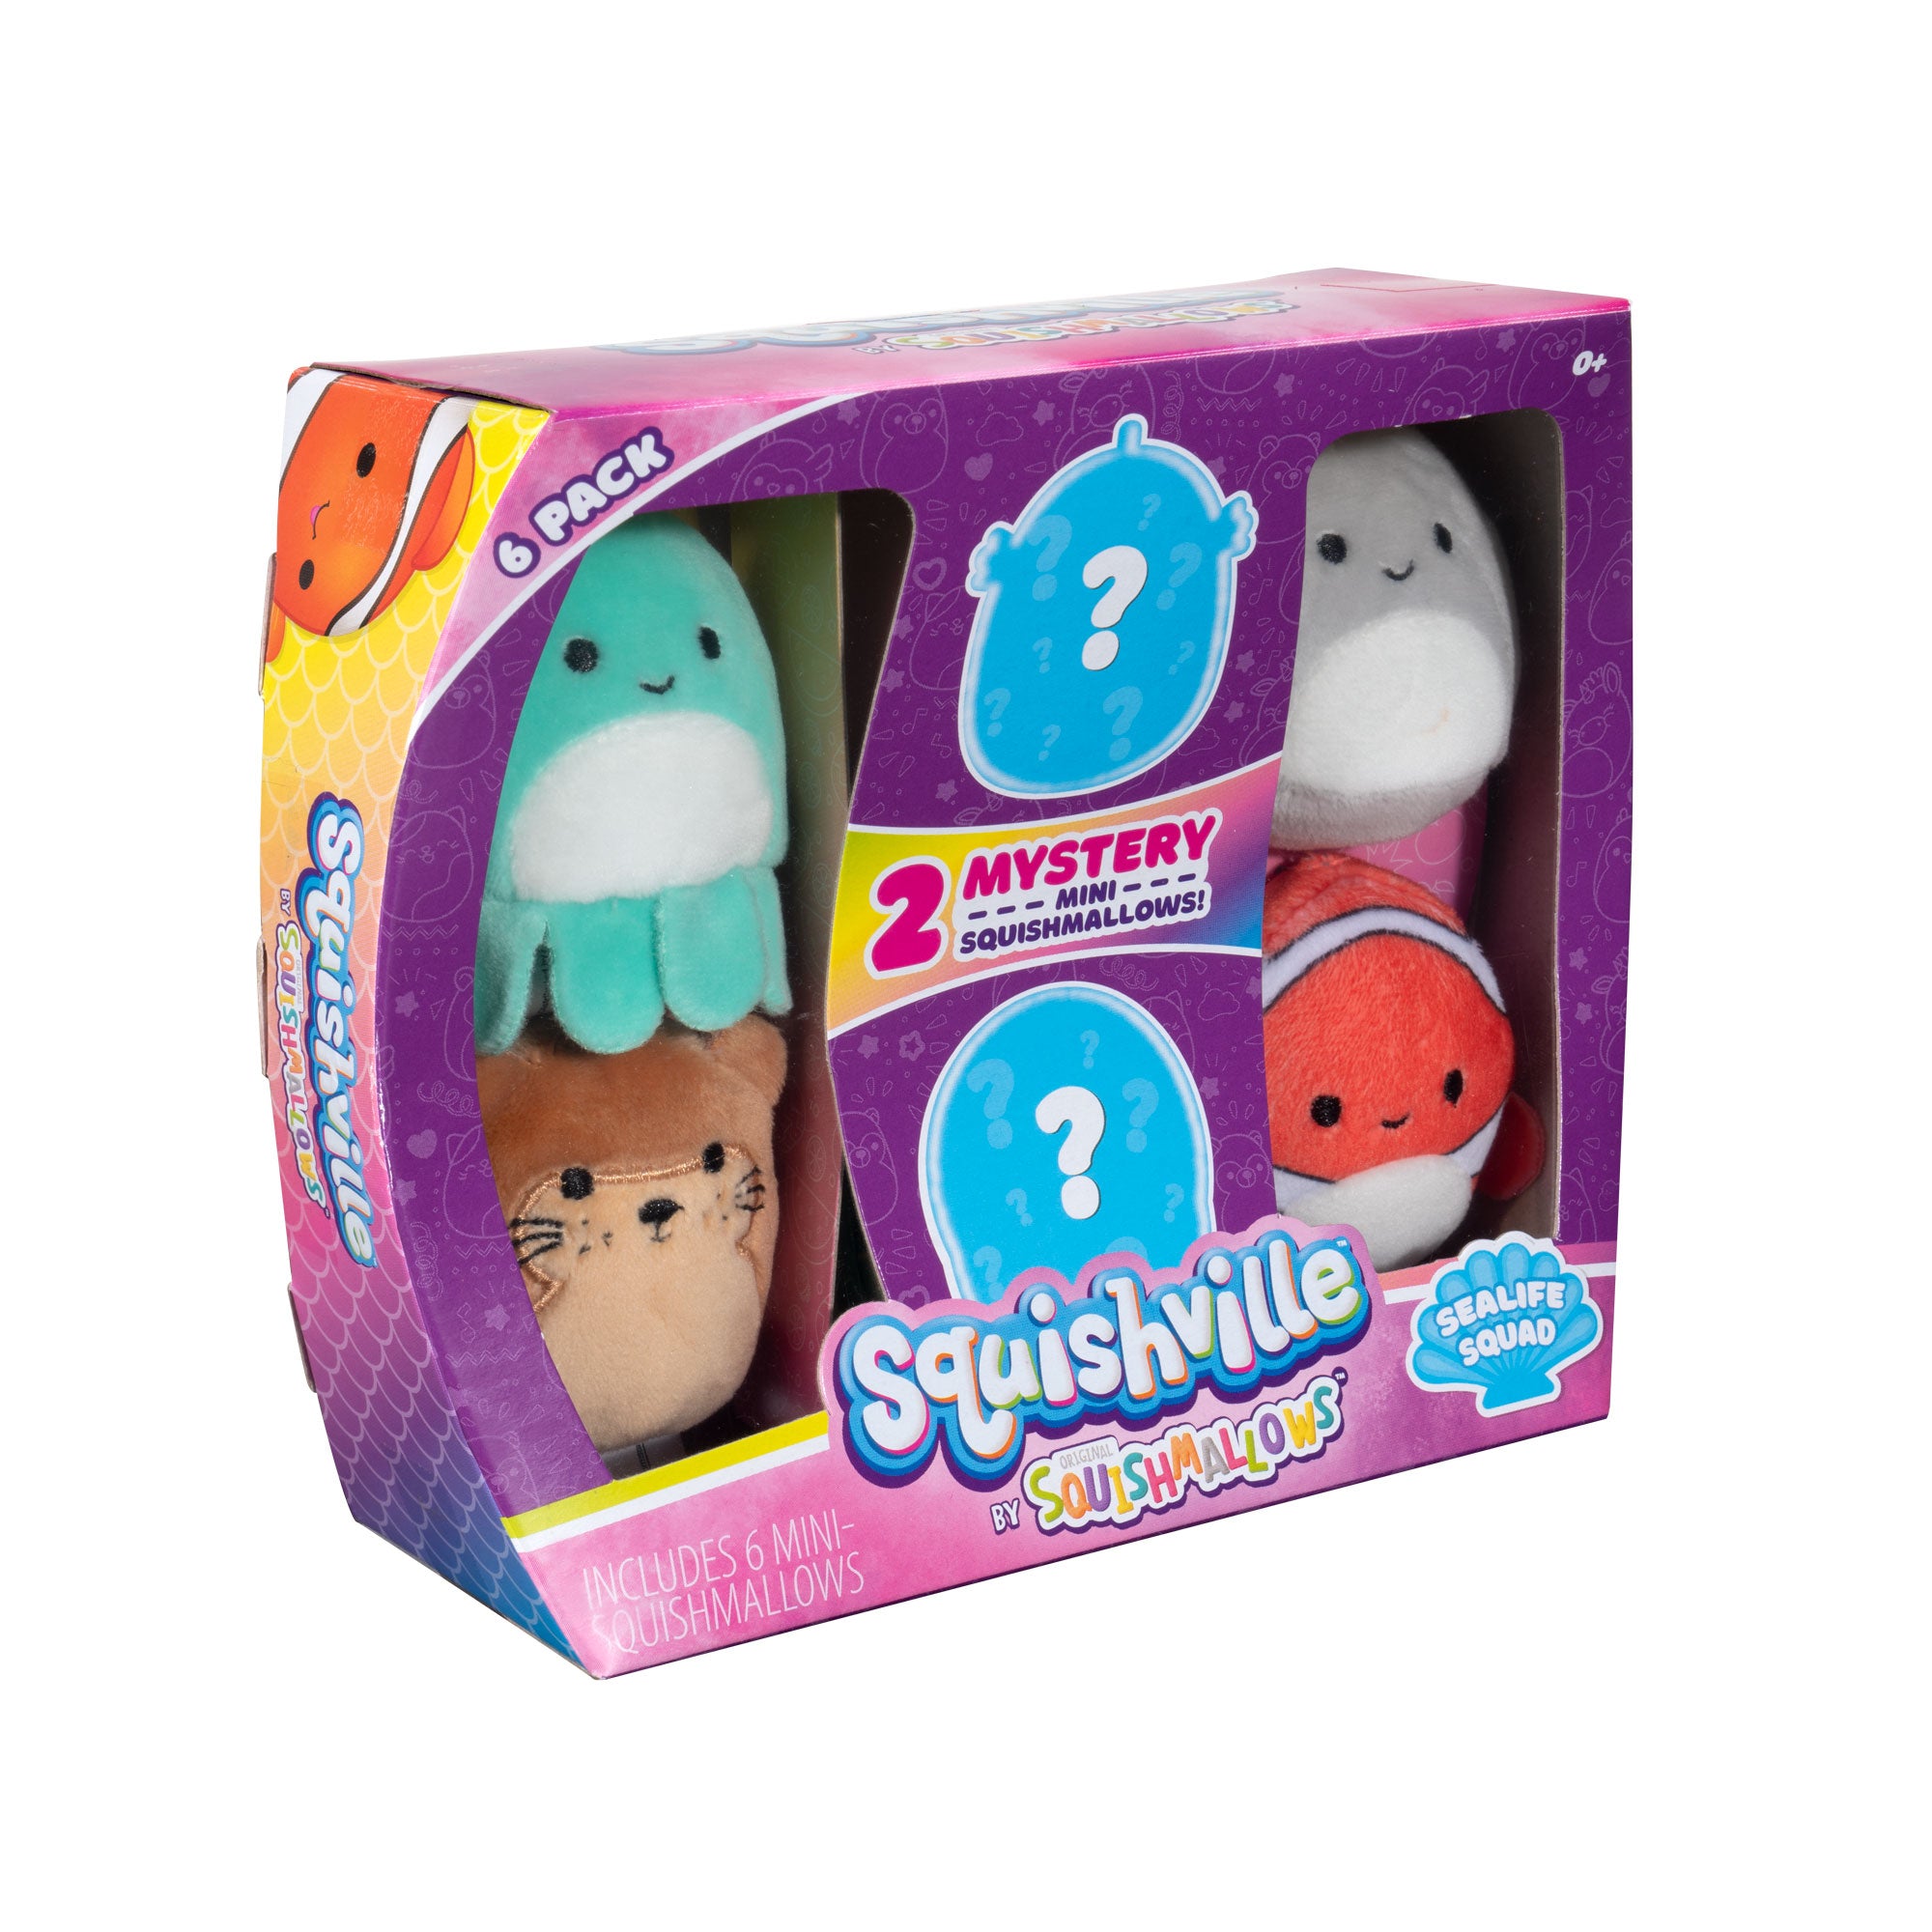 Squishville Mini Squishmallows 6-Pack Sealife Squad